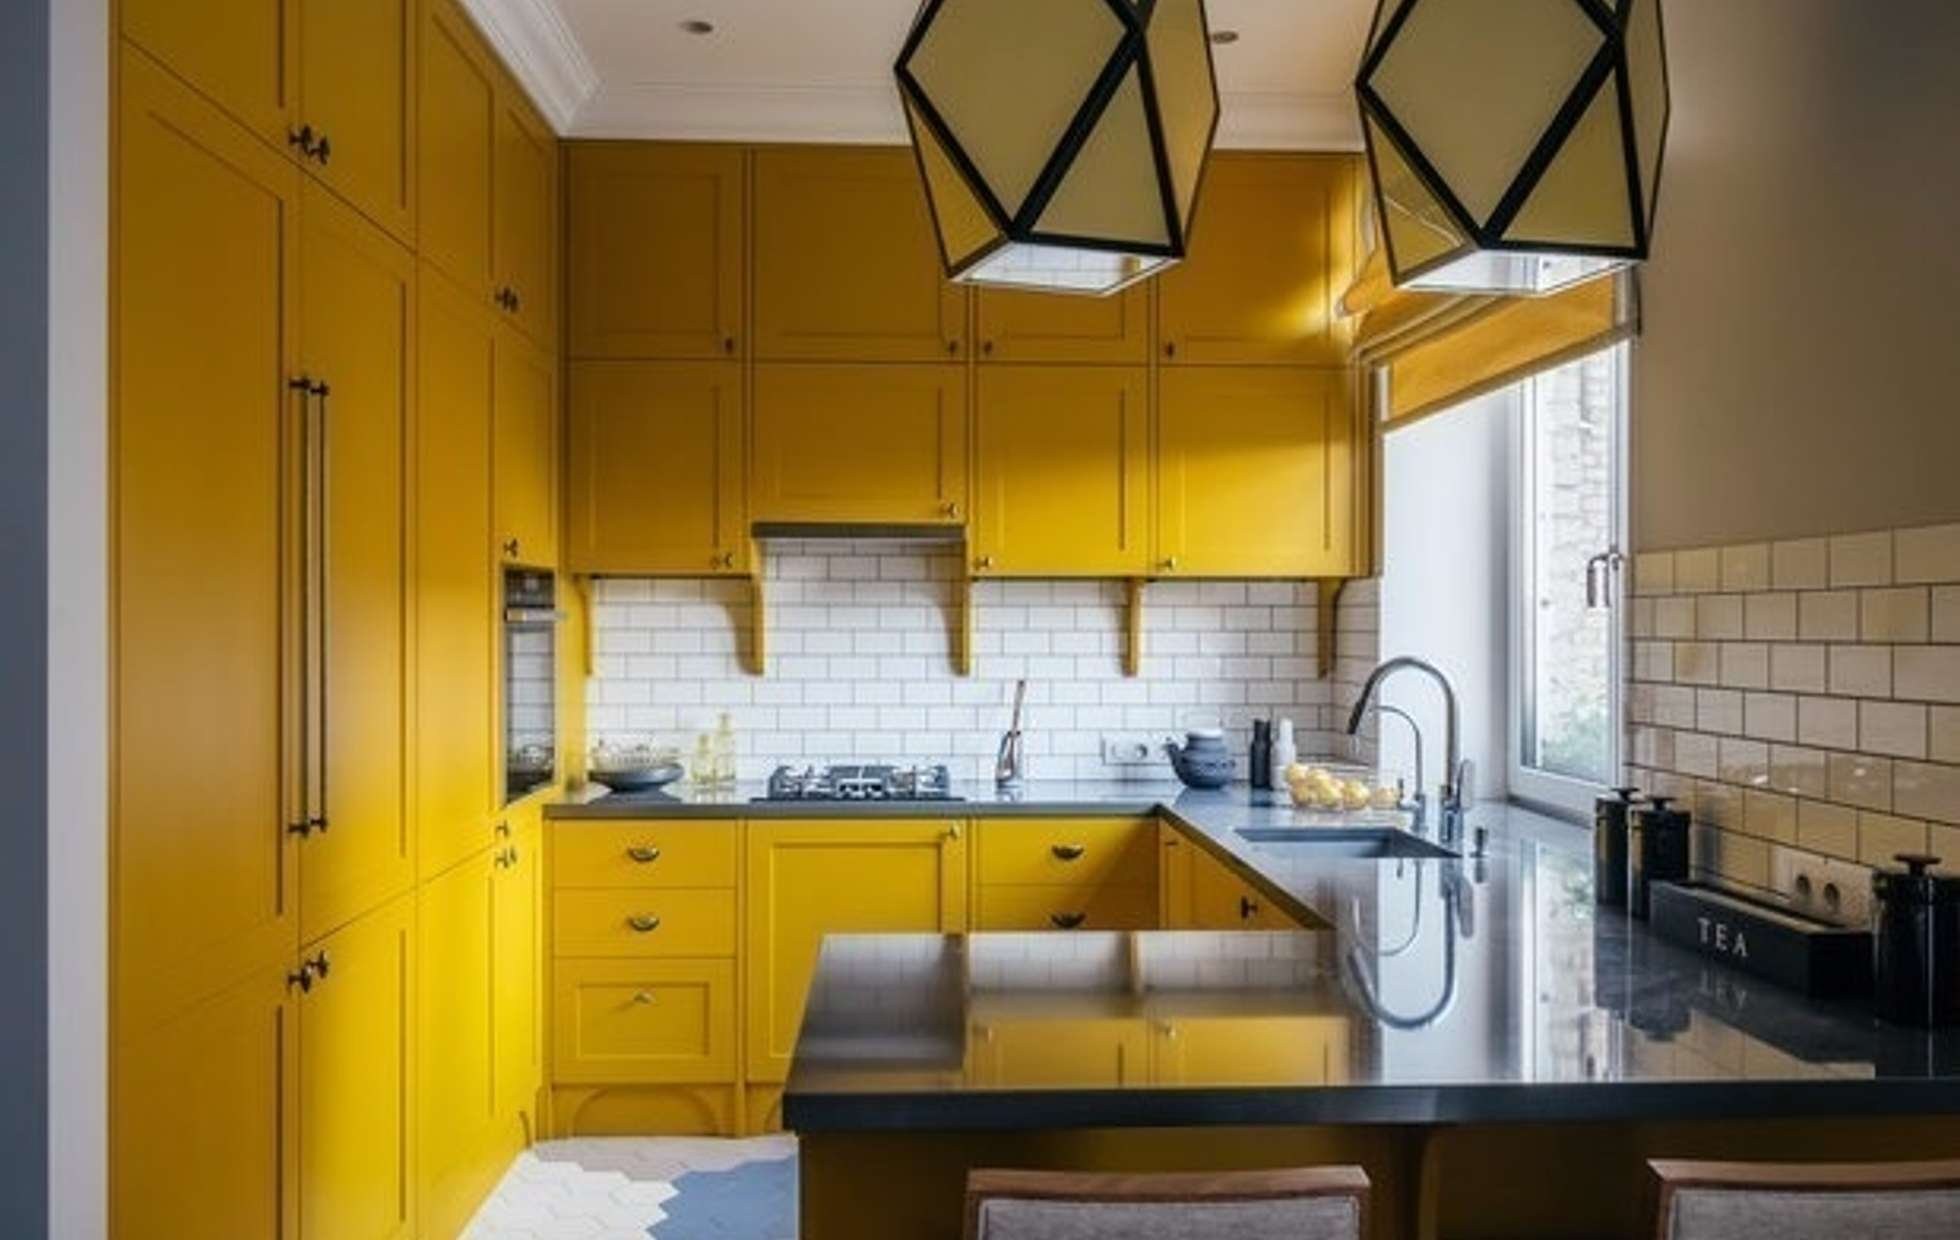 Купить желтую кухню. Горчичная кухня. Желтые кухни. Кухня в желтых тонах. Яркий интерьер кухни.